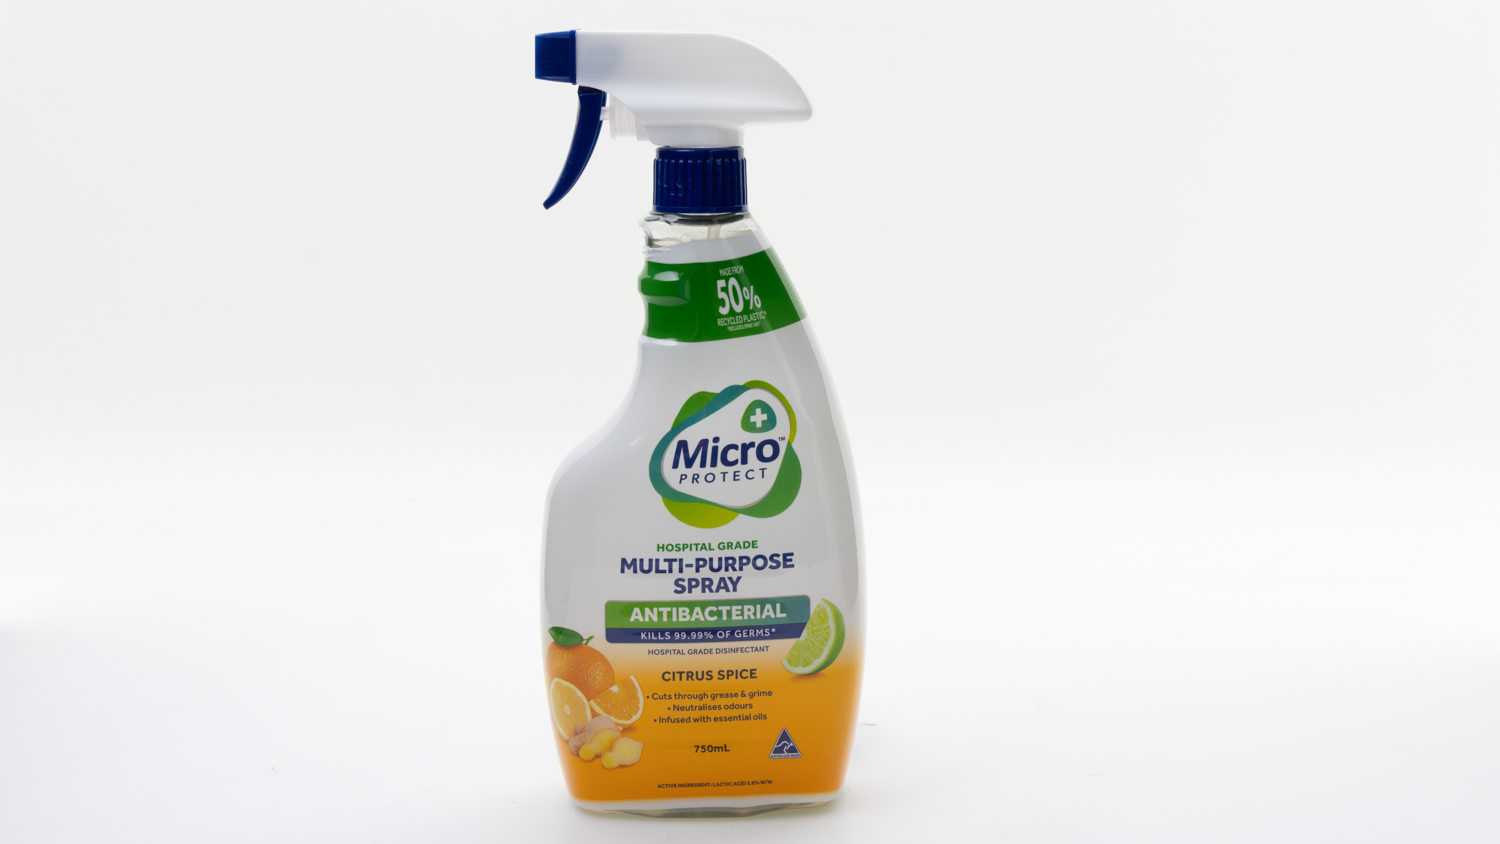 Micro Protect Hospital Grade Multi-Purpose Spray Antibacterial carousel image